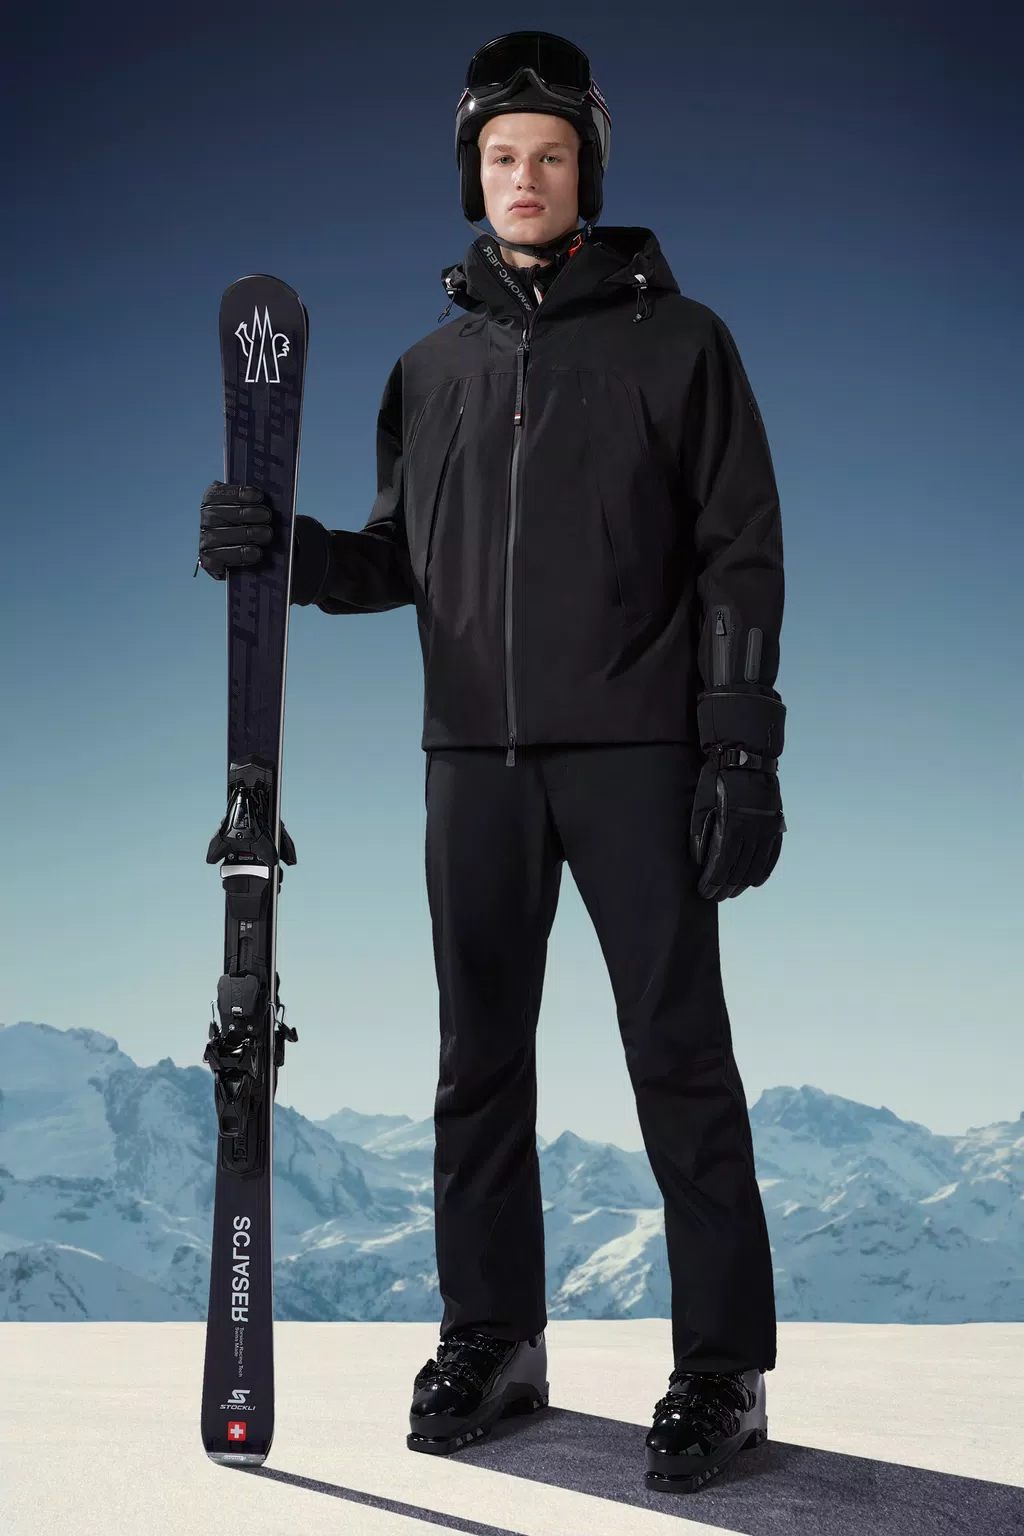 Apres Ski for Men - Grenoble